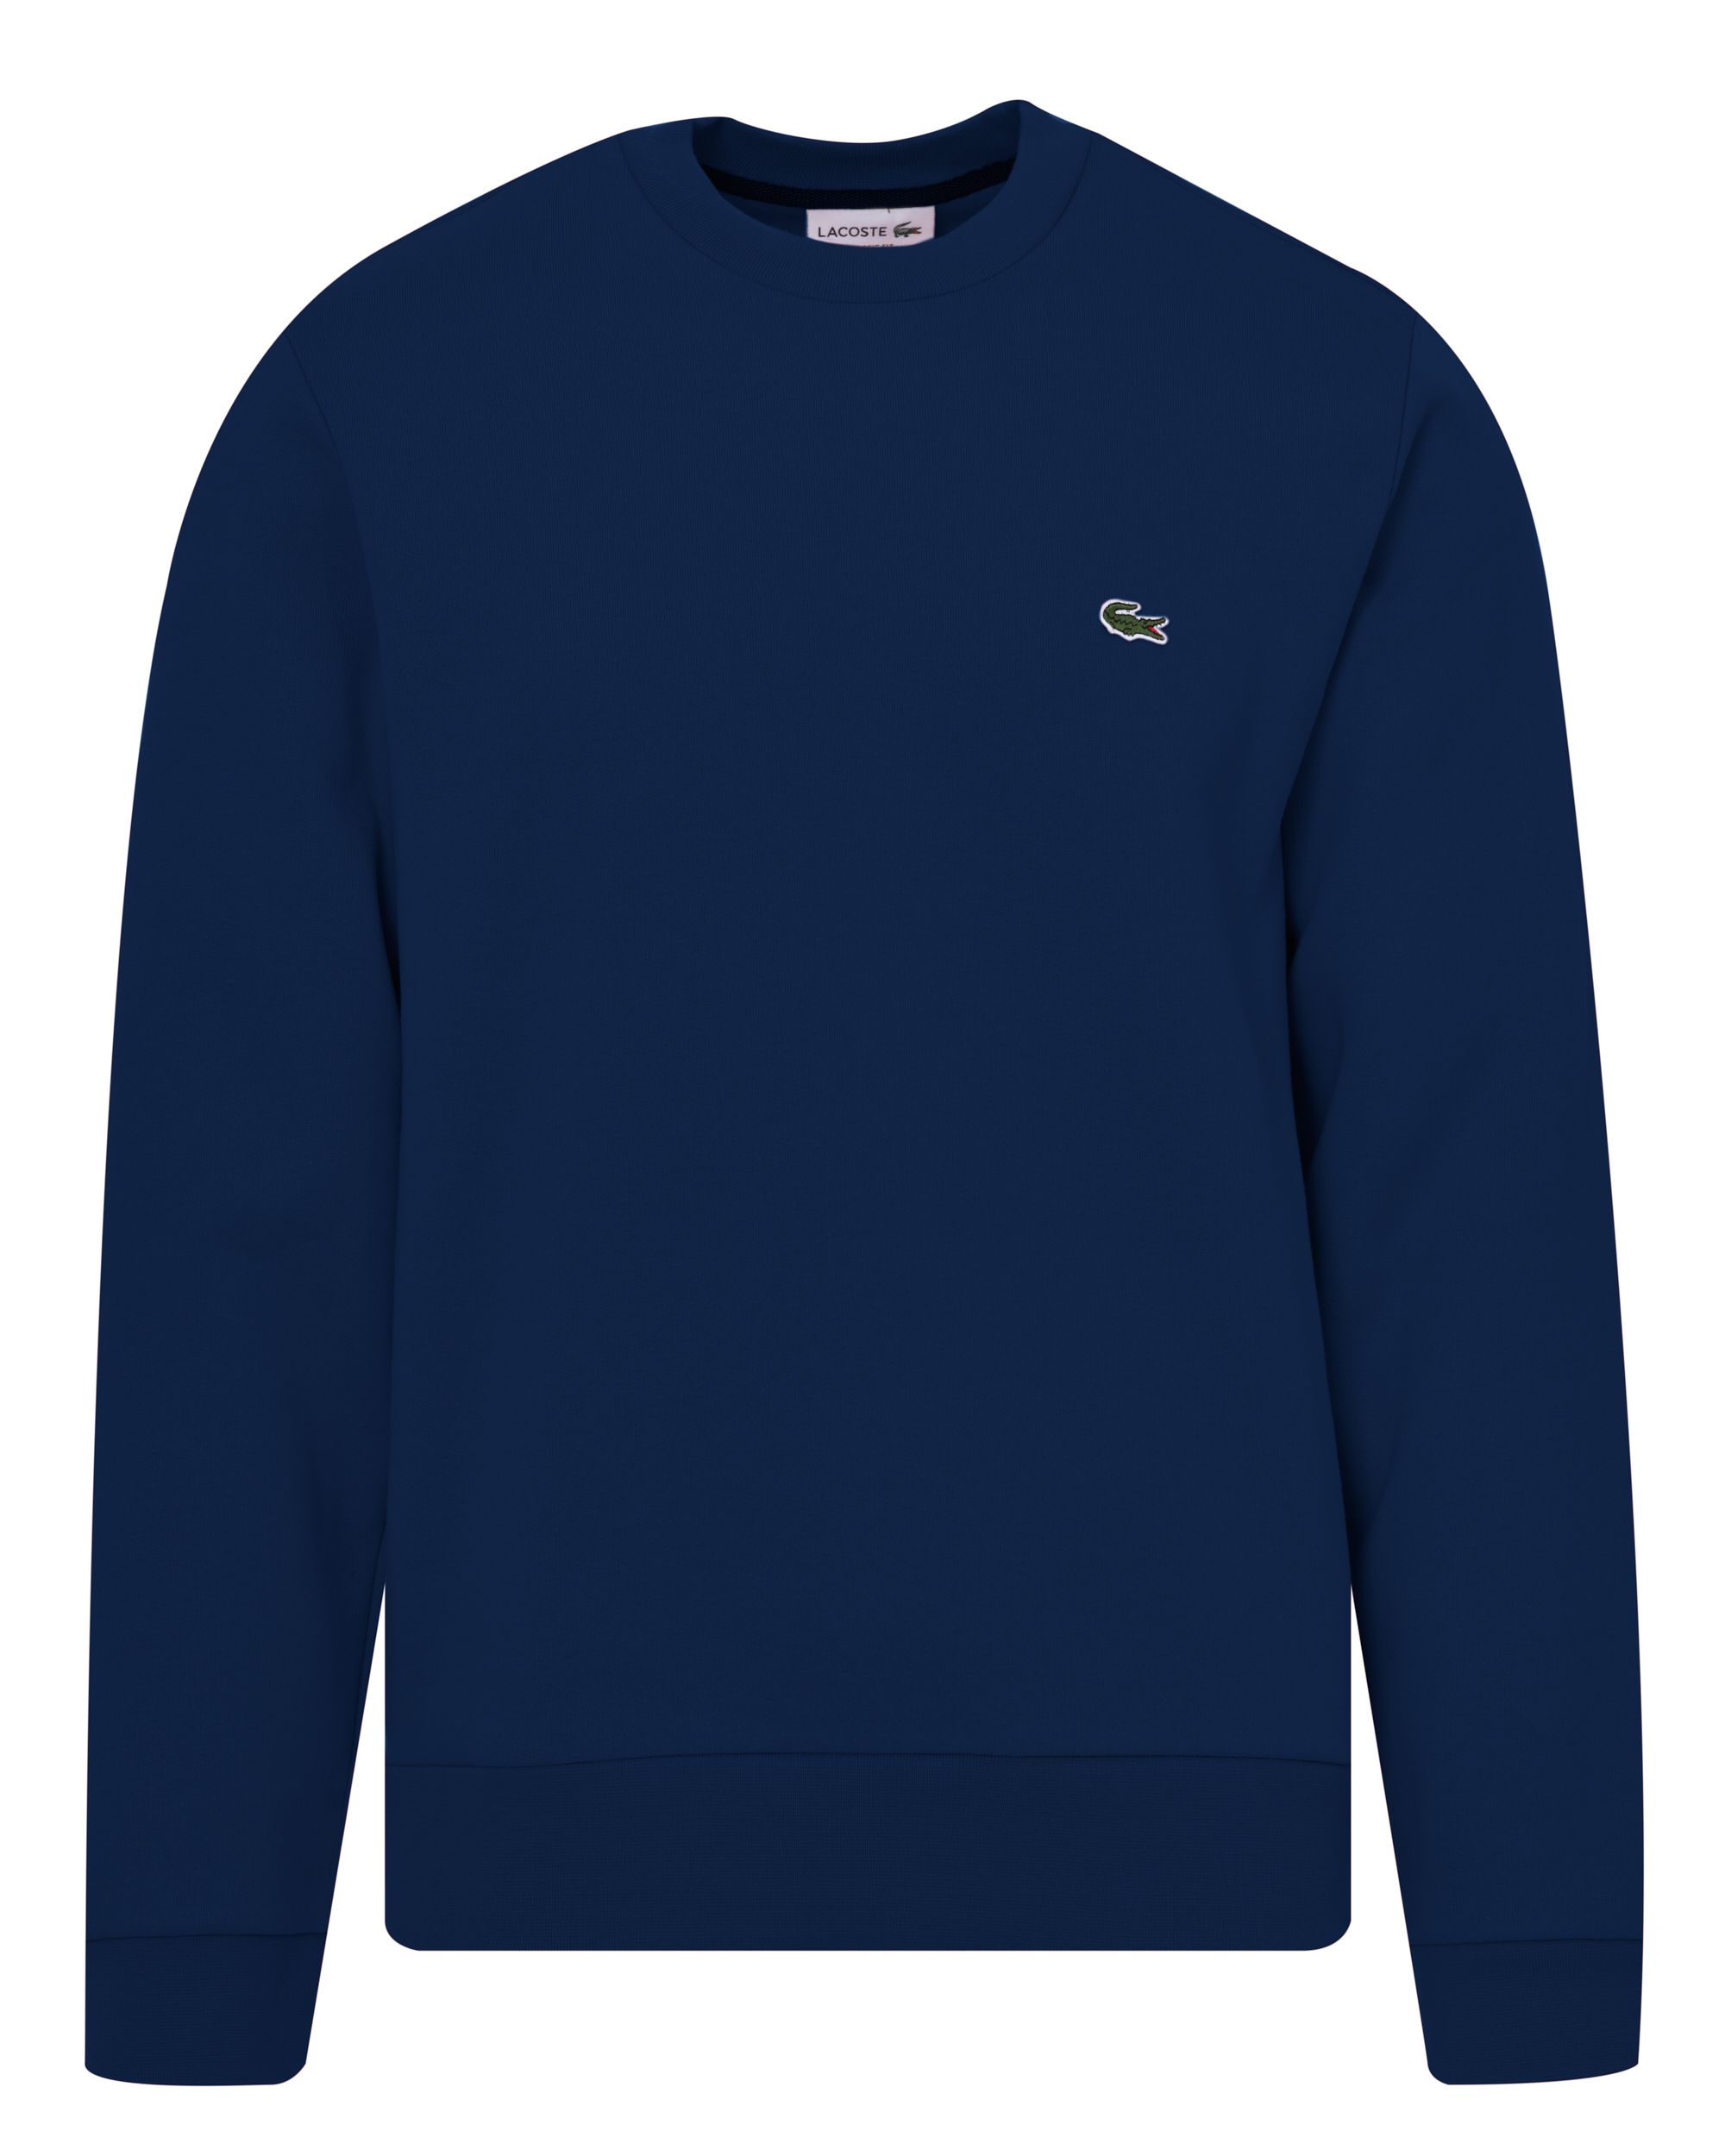 Lacoste Sweater Donker blauw 084073-001-L